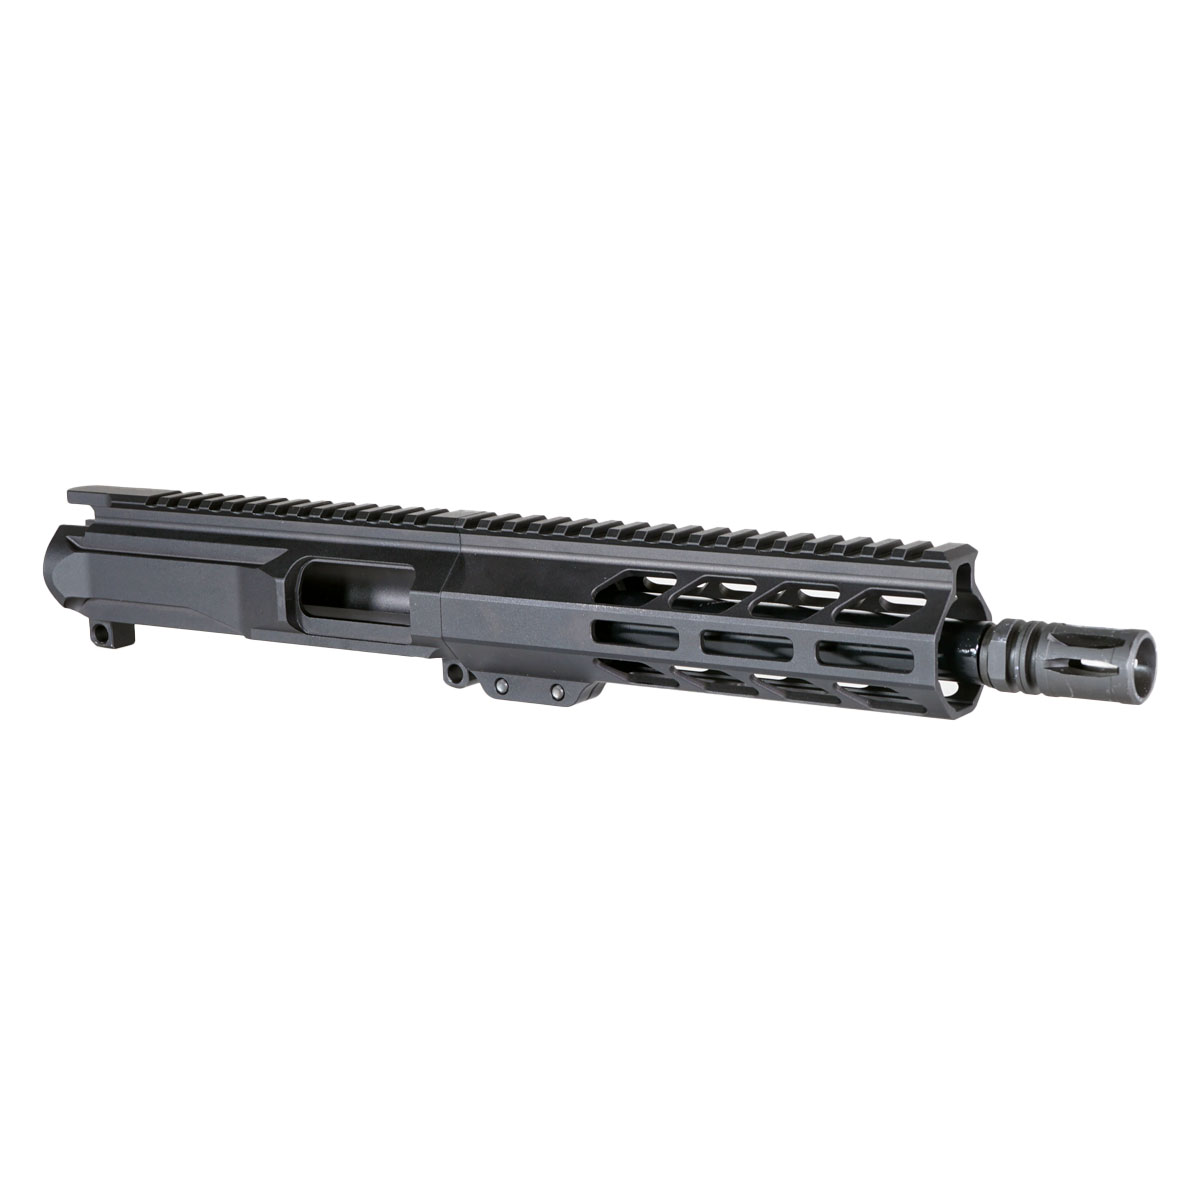 DD 'Eternal Night Gen 2' 8.5-inch AR-15 9mm Nitride Pistol Upper Build Kit